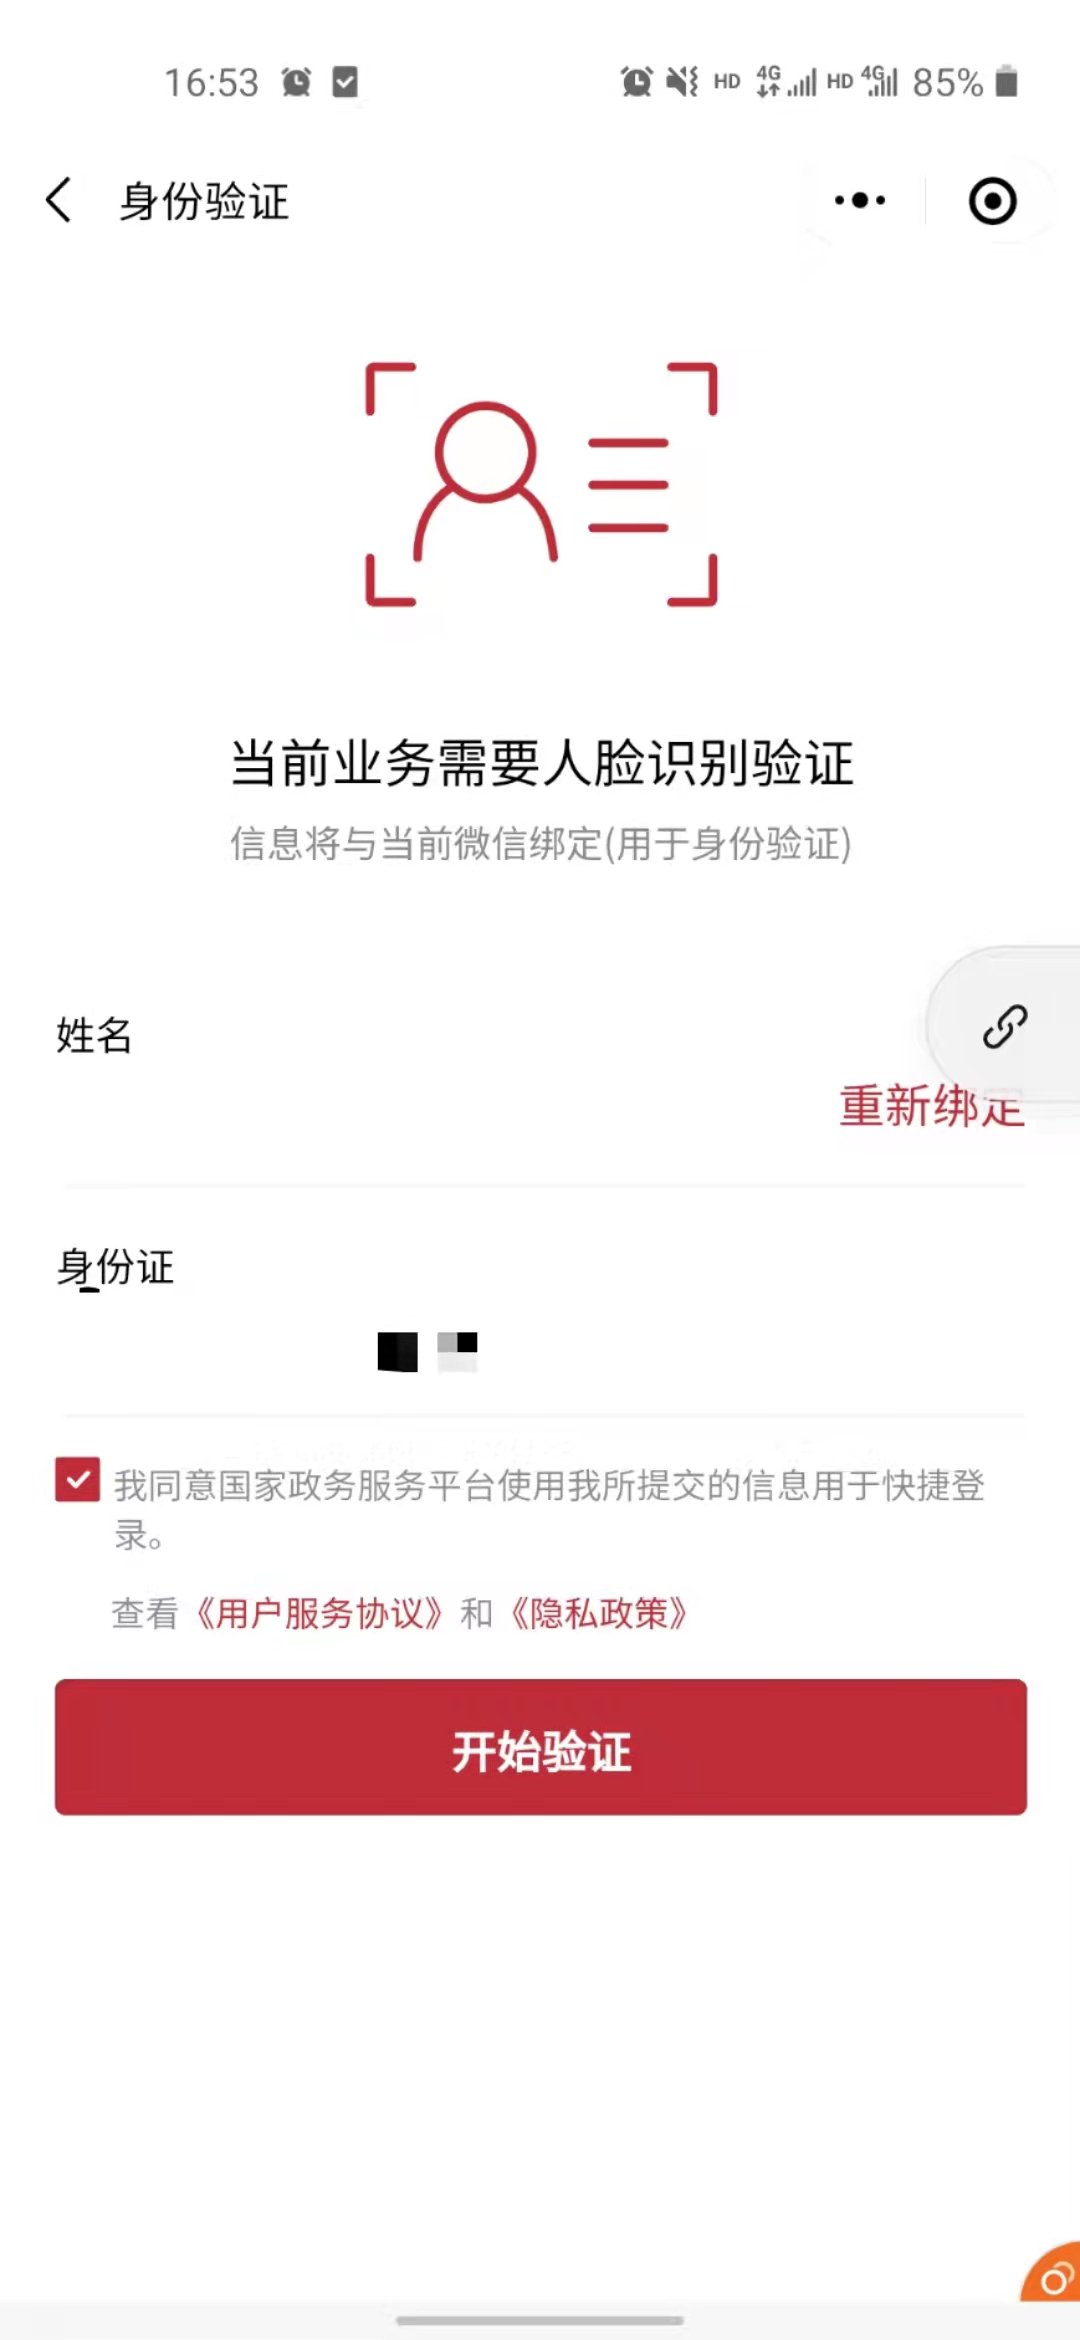 2022北京普通话考试电子证书领取全指南